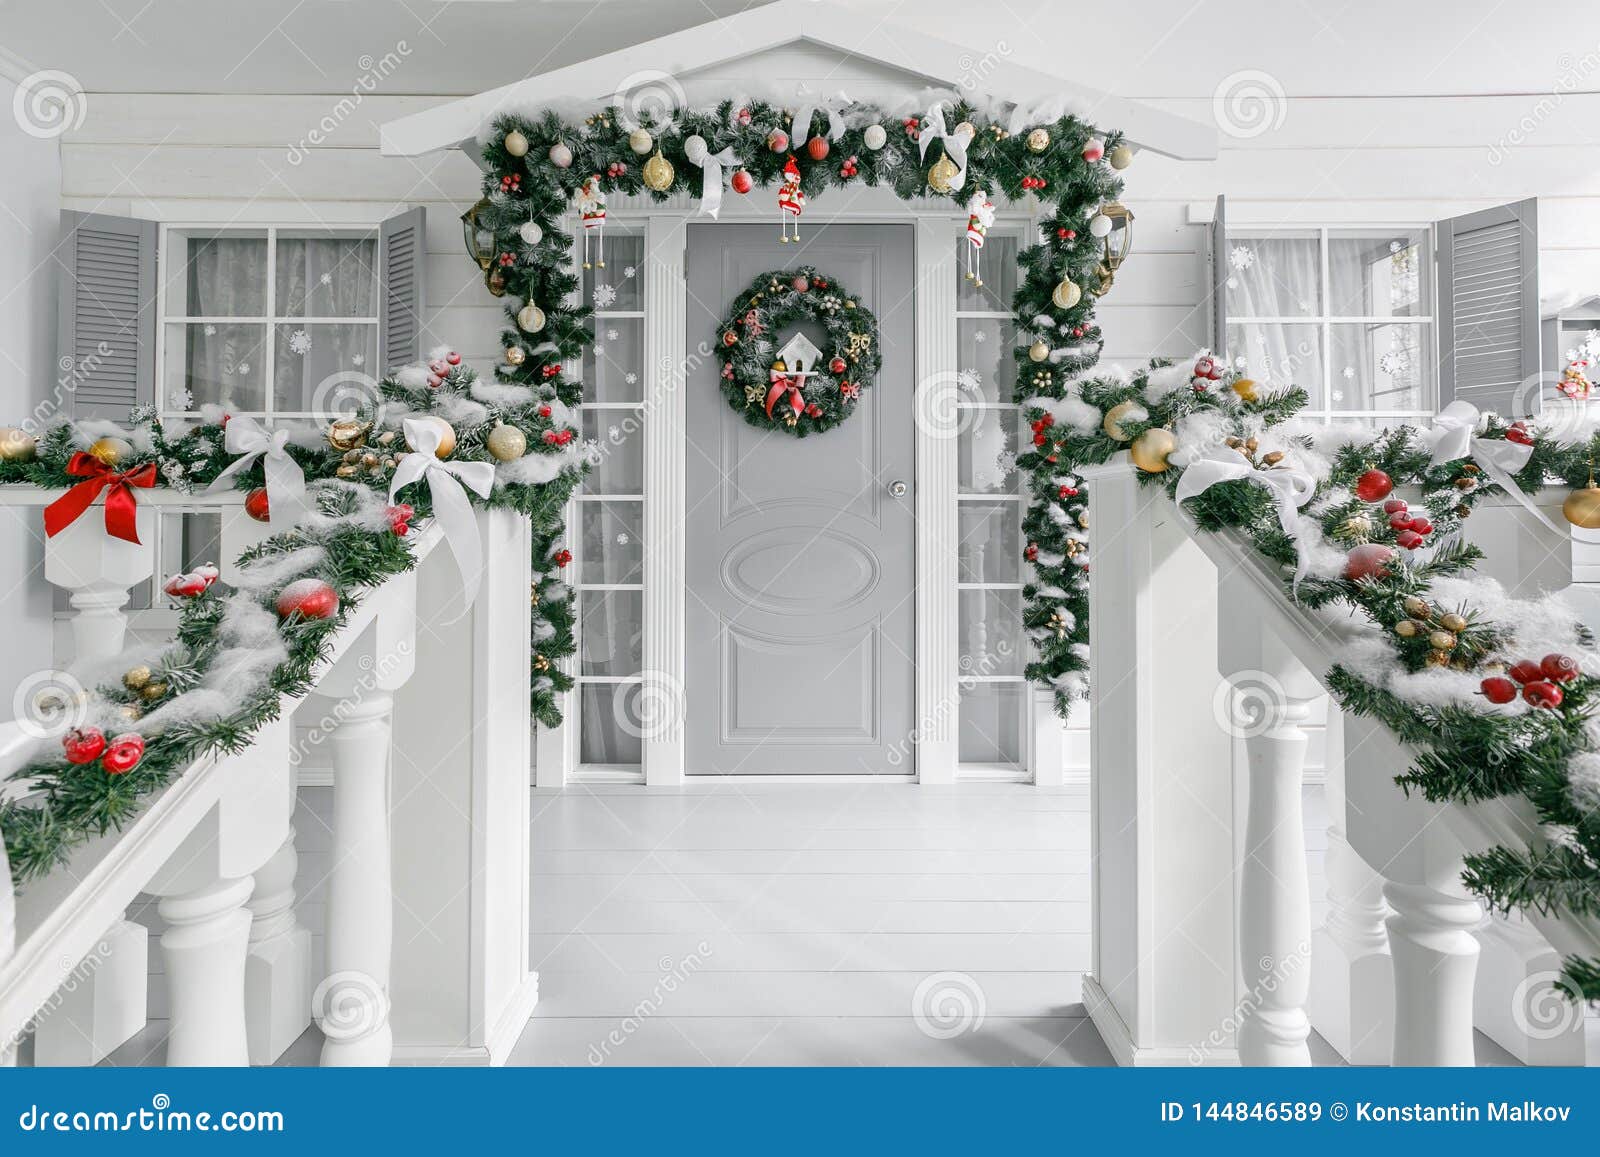 Πρωί Χριστουγέννων μέρος ένα μικρό σπίτι με μια διακοσμημένη πόρτα με ένα στεφάνι Χριστουγέννων Χειμερινό παραμύθι